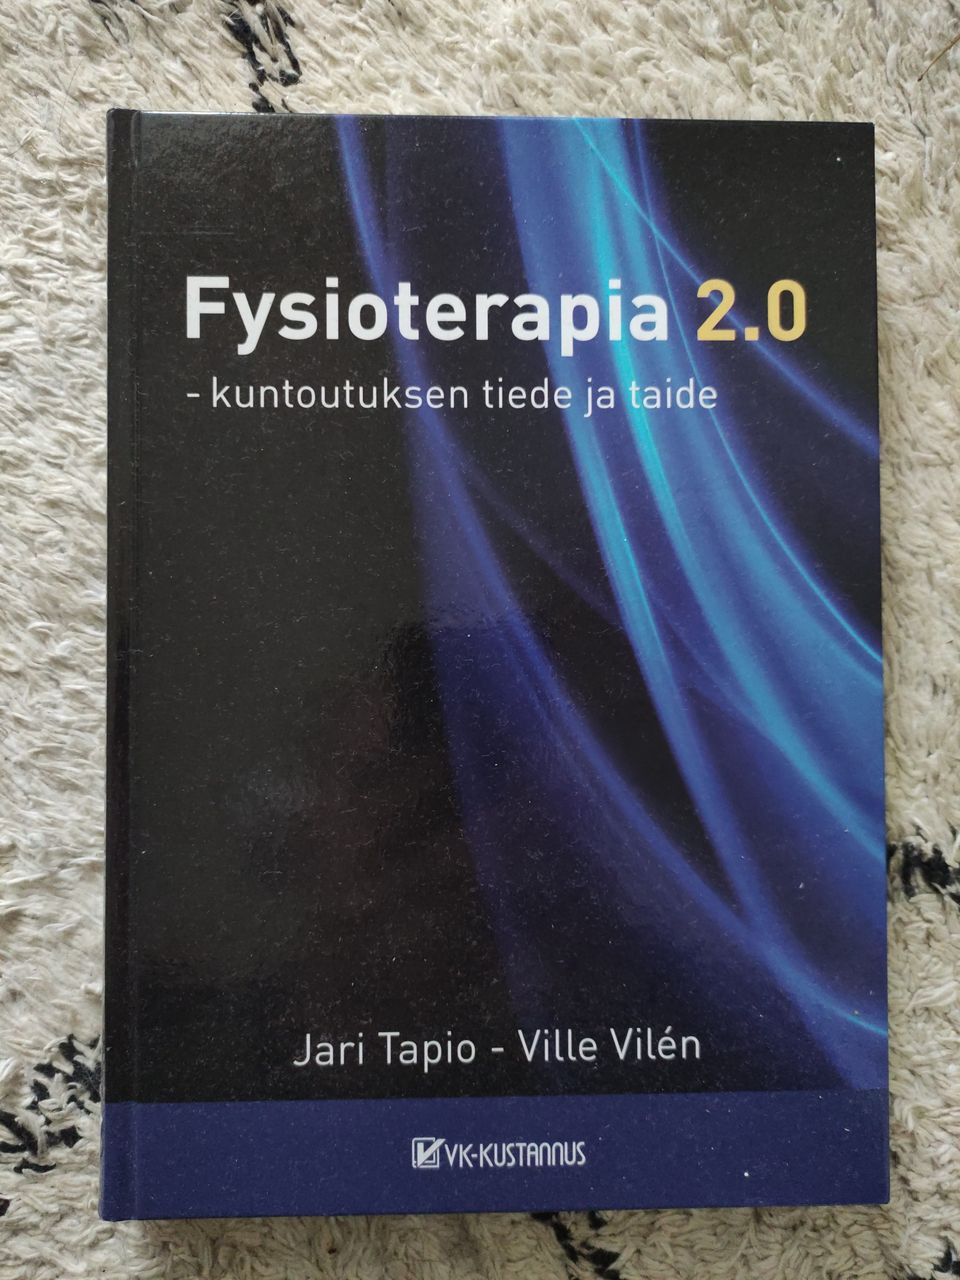 Jari Tapio - Ville Vilén Fysioterapia 2.0 kirja